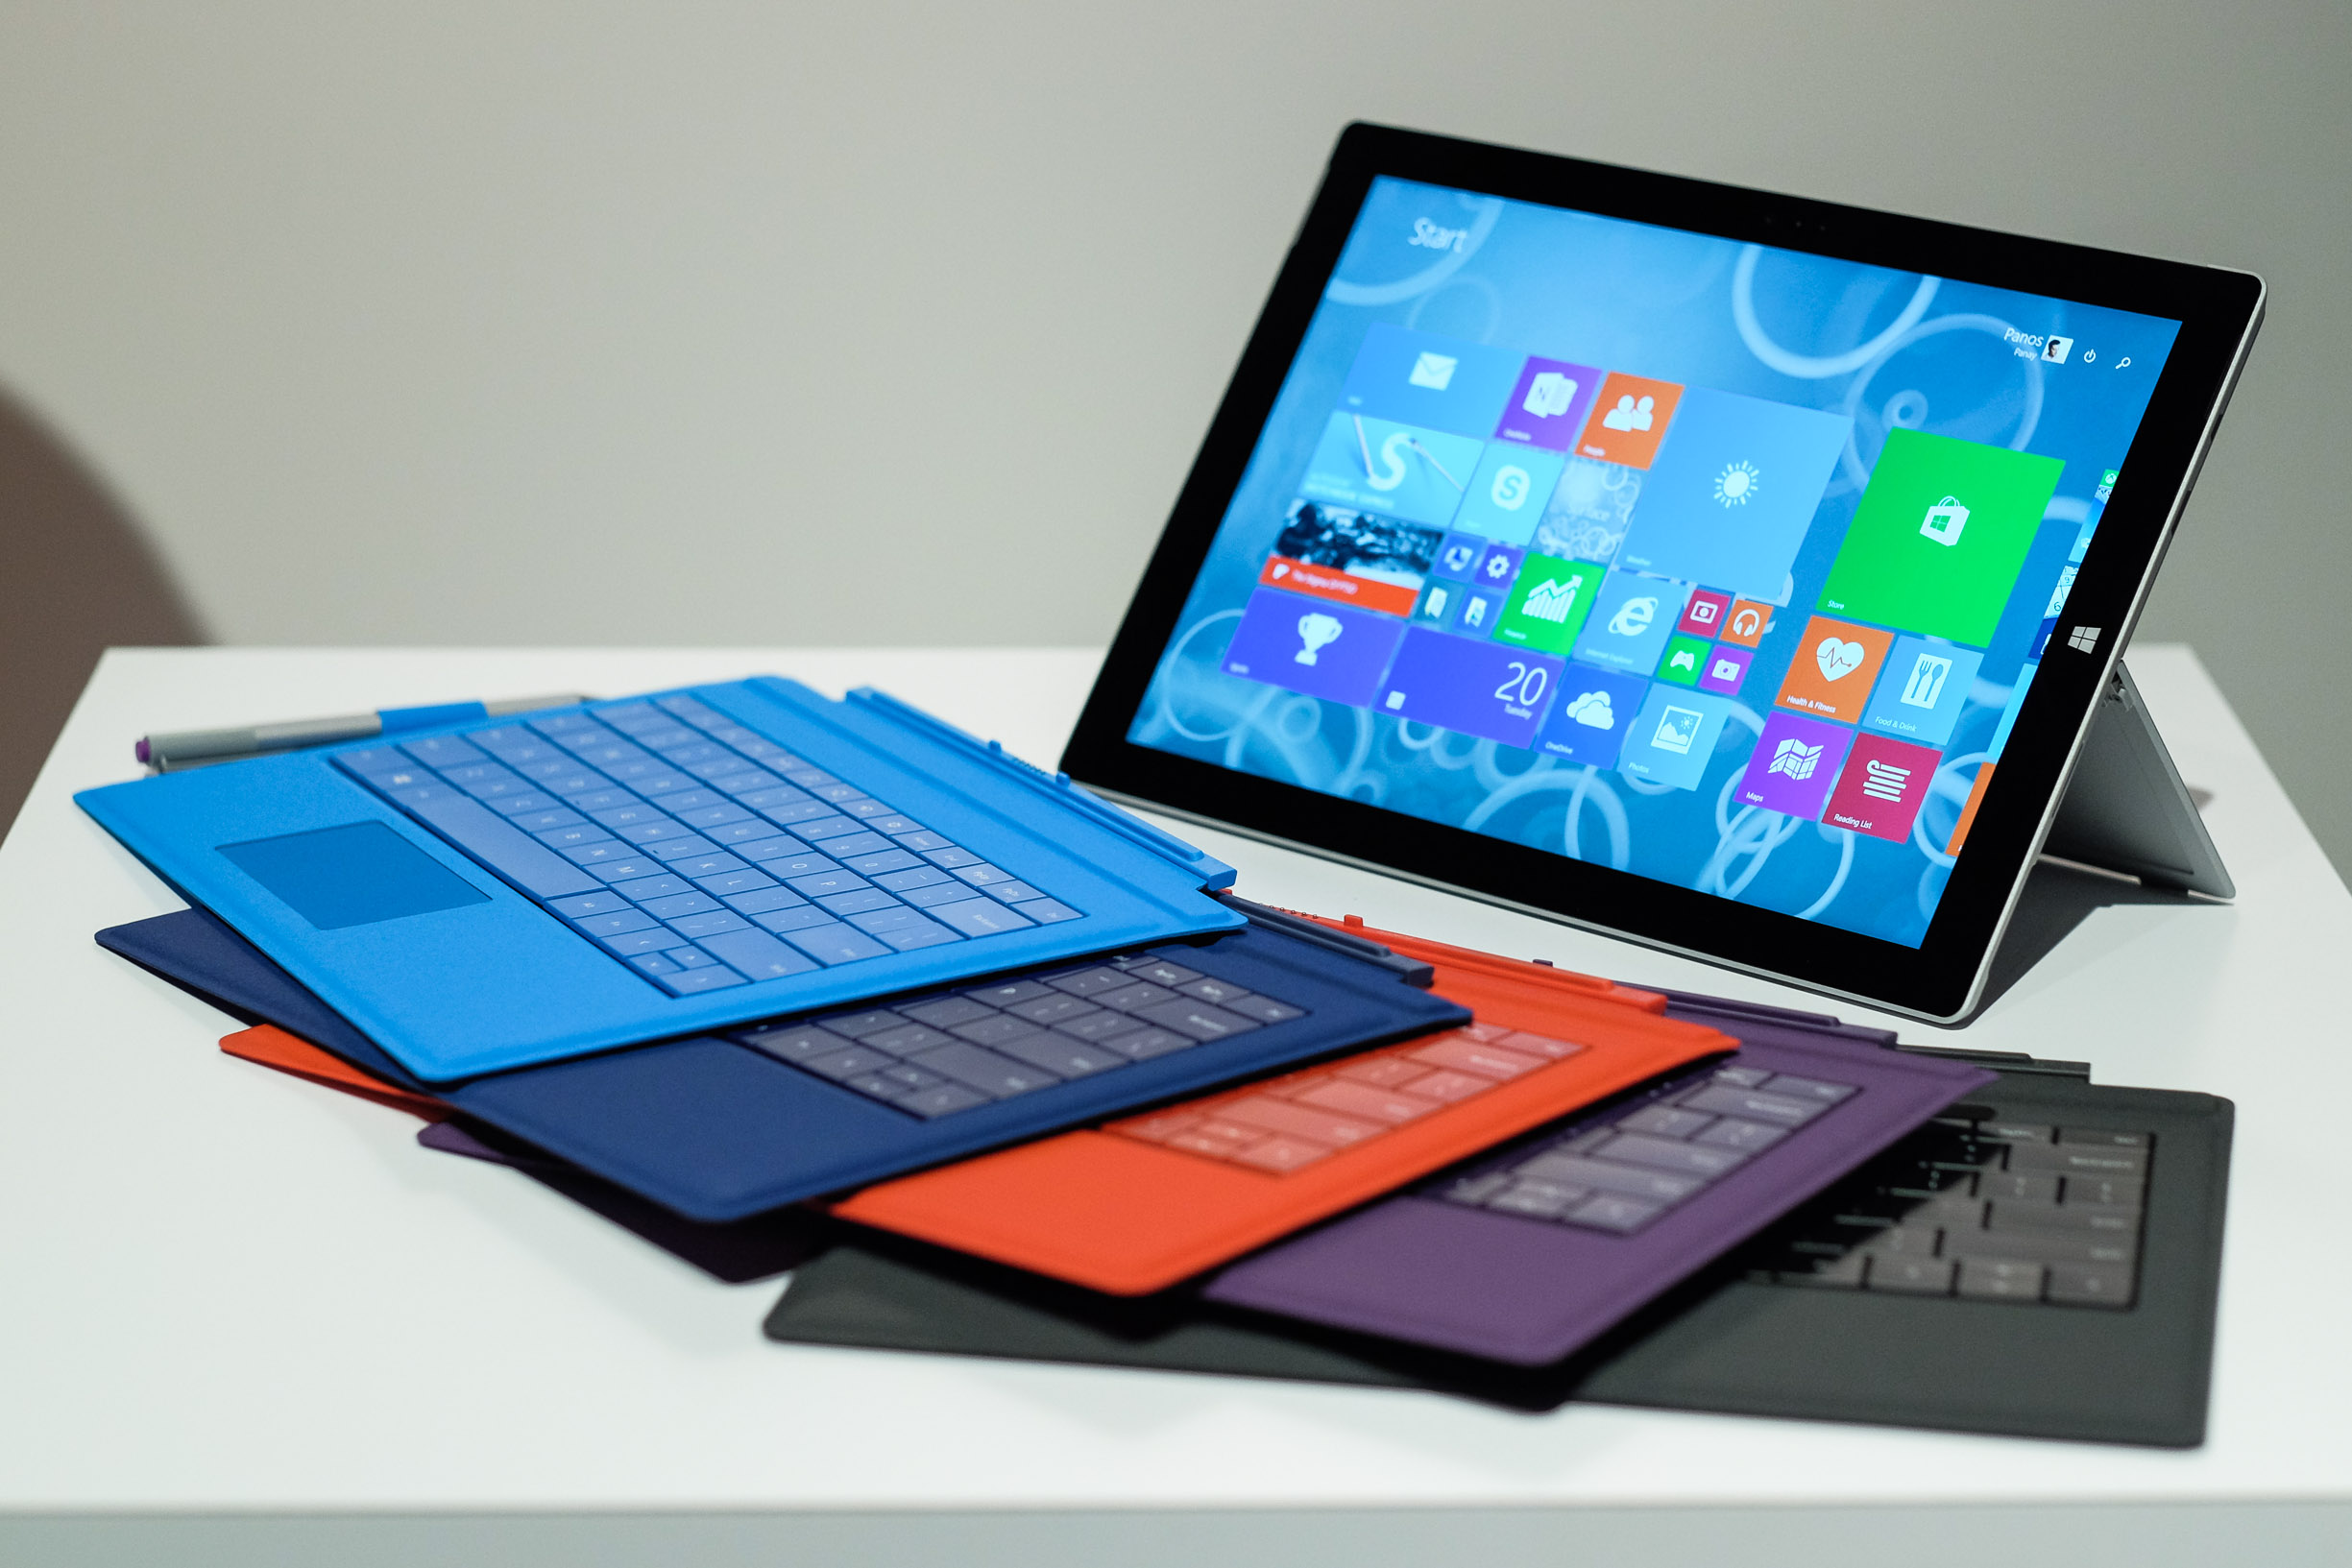 La Microsoft Surface Pro 4 succombe déjà à des problèmes d'autonomie